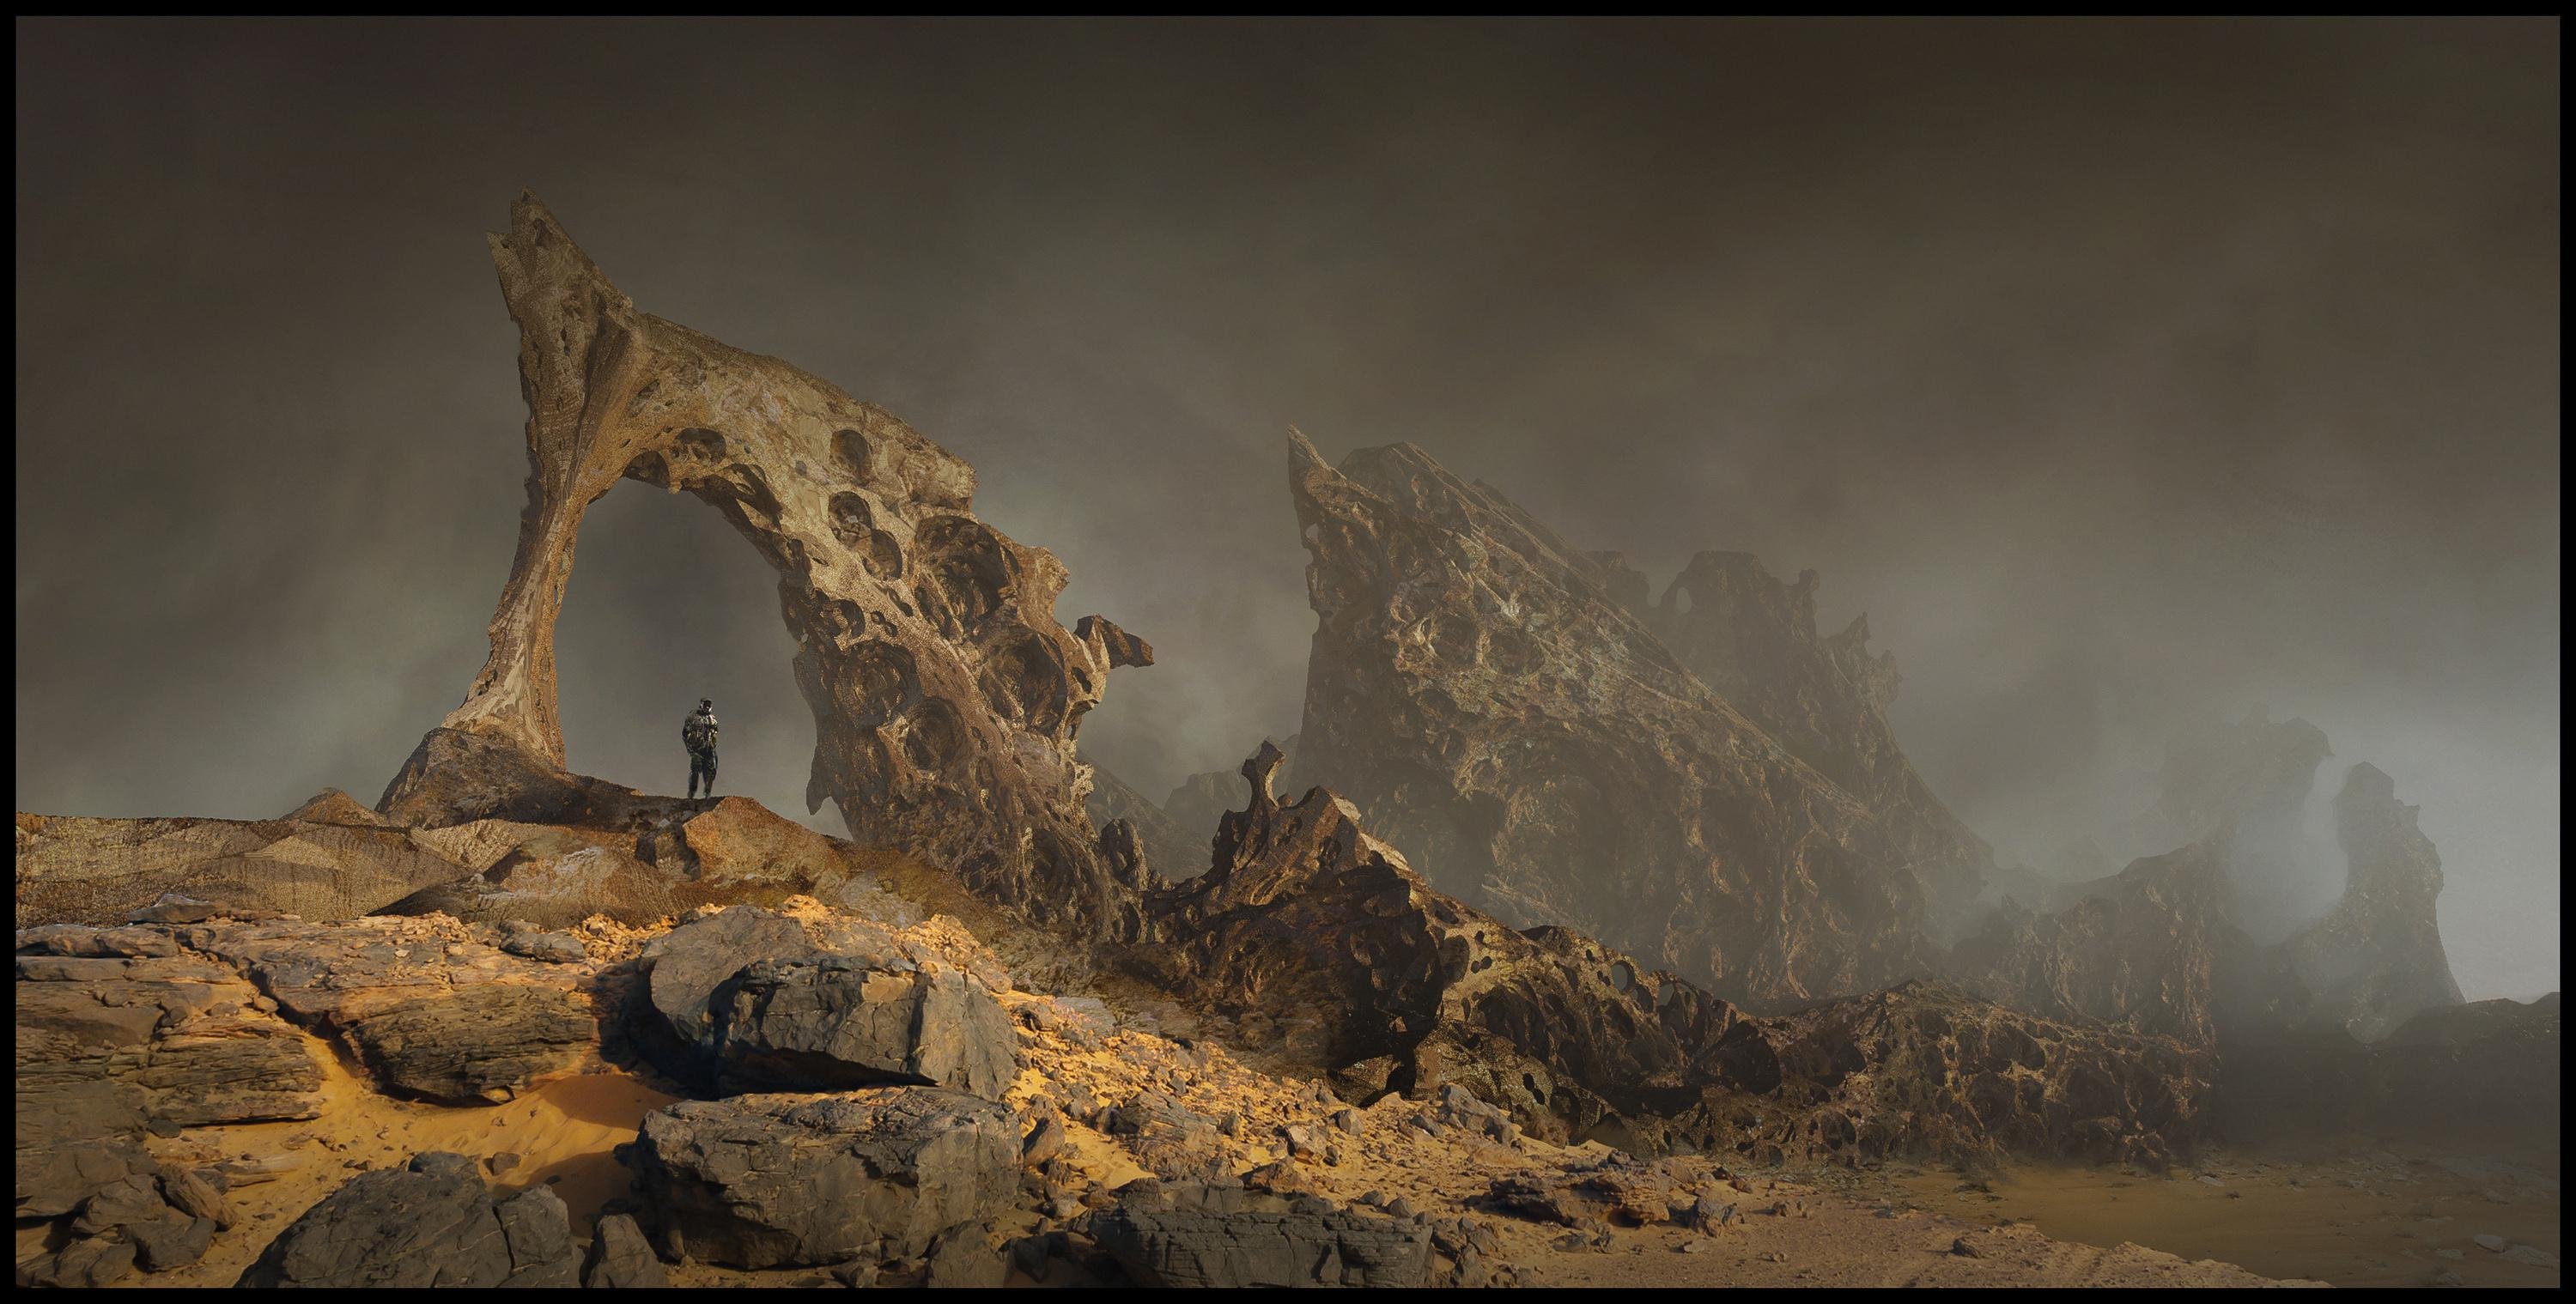 Arte oficial do novo jogo multiplayer em mundo aberto da série Dune